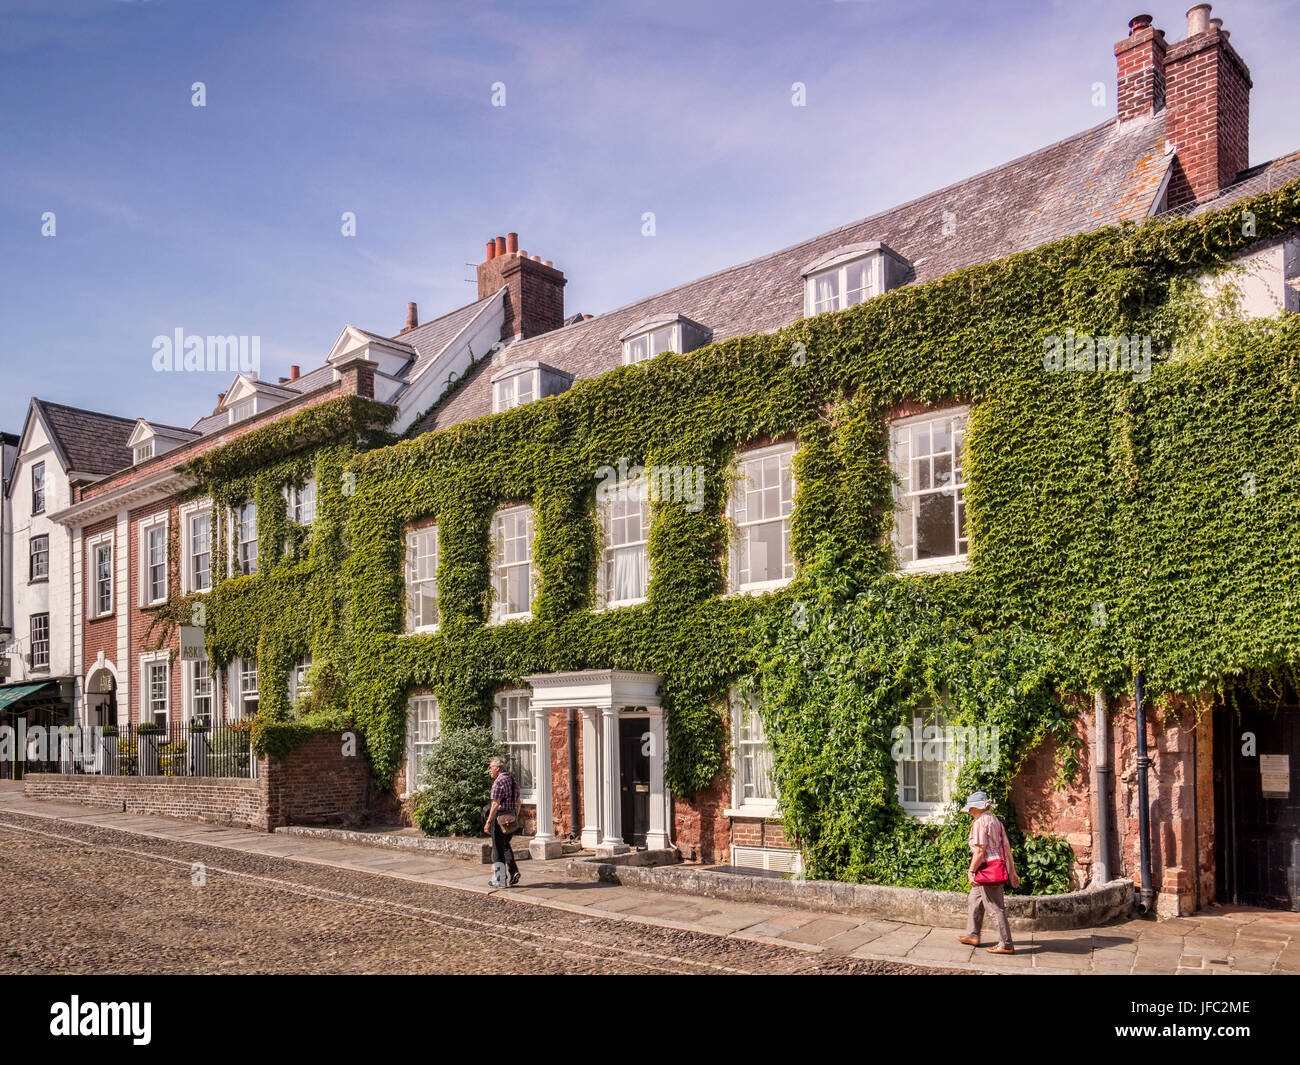 20 Juin 2017 : Exeter, Devon, UK - Maisons à proximité de la Cathédrale, Exeter, à travers le livre vert de la cathédrale. Banque D'Images